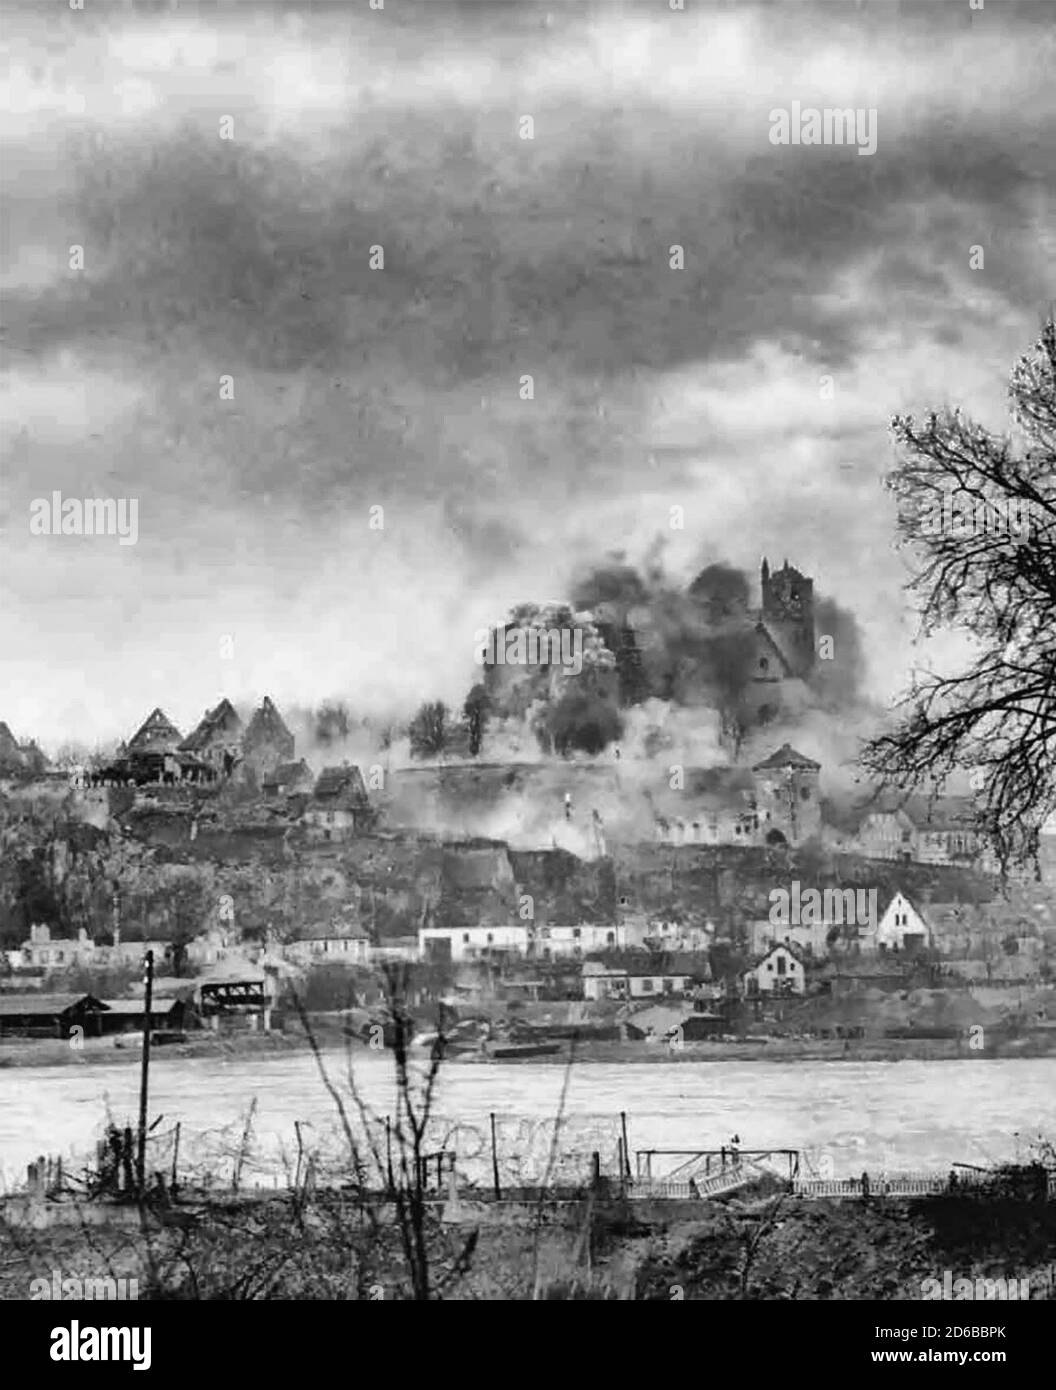 La ciudad de Breisach, Alemania, durante un bombardeo pesado de artillería como parte de la Campaña de Renania, Segunda Guerra Mundial, del 26 de enero al 21 de marzo de 1945 Foto de stock